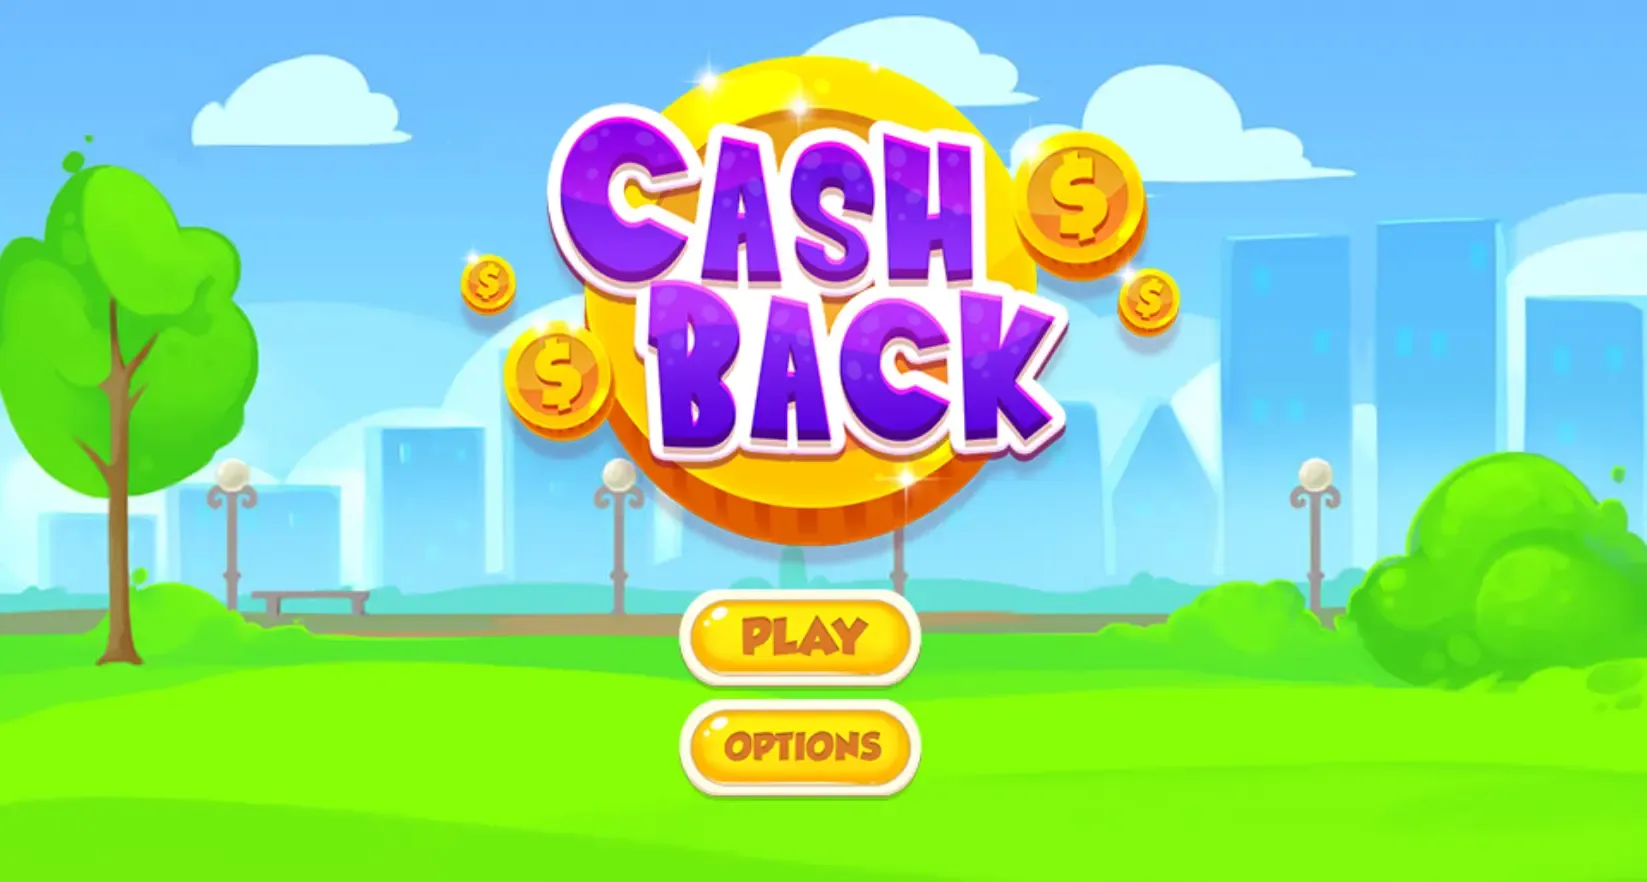 Cash Back online money game